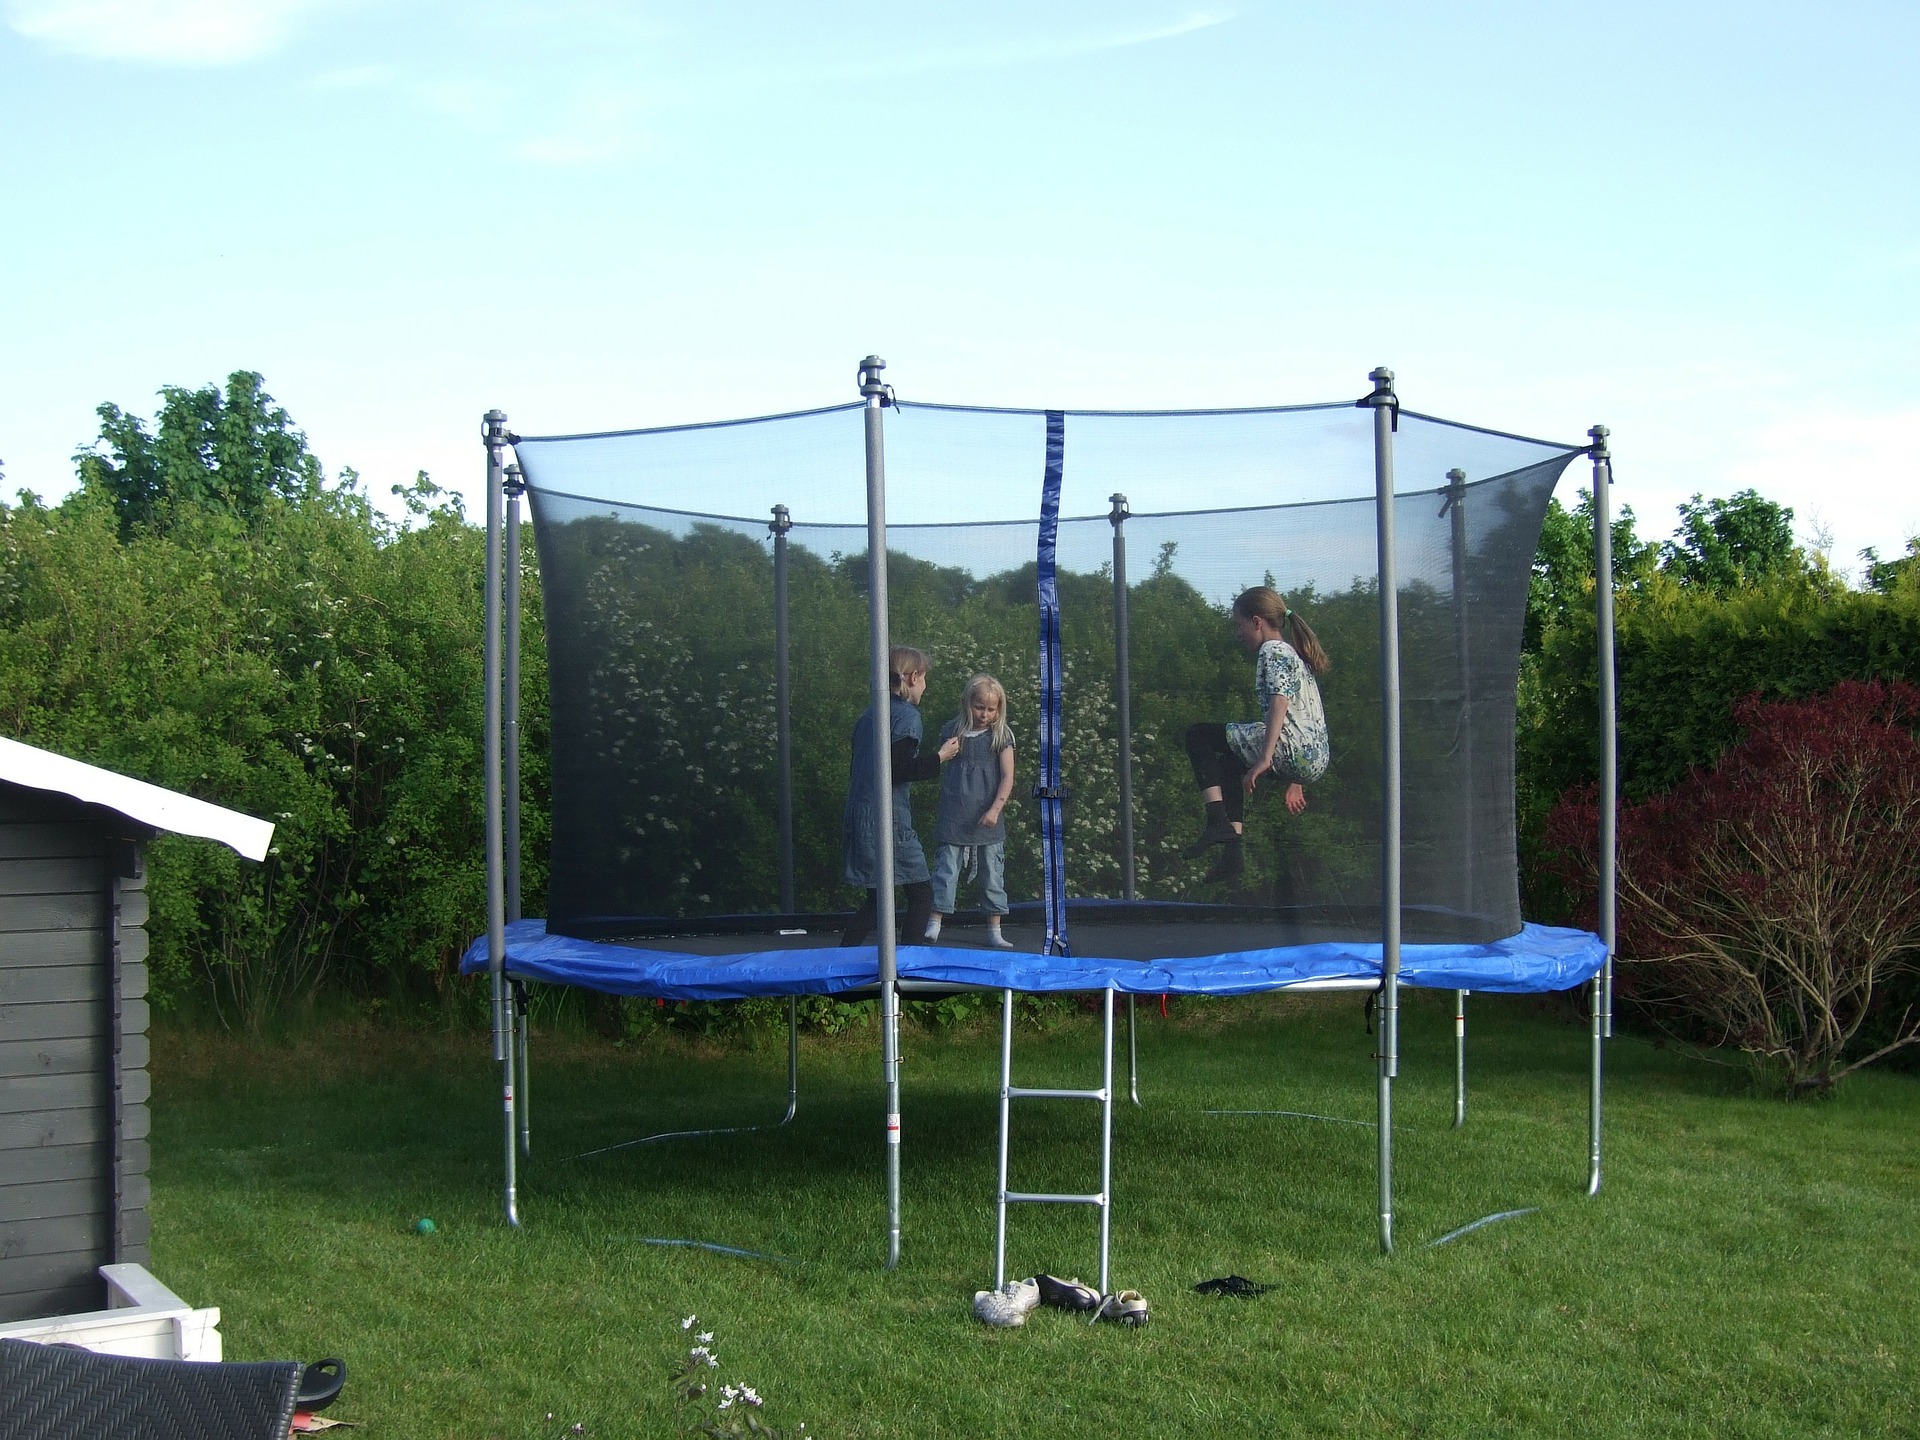 A trampoline